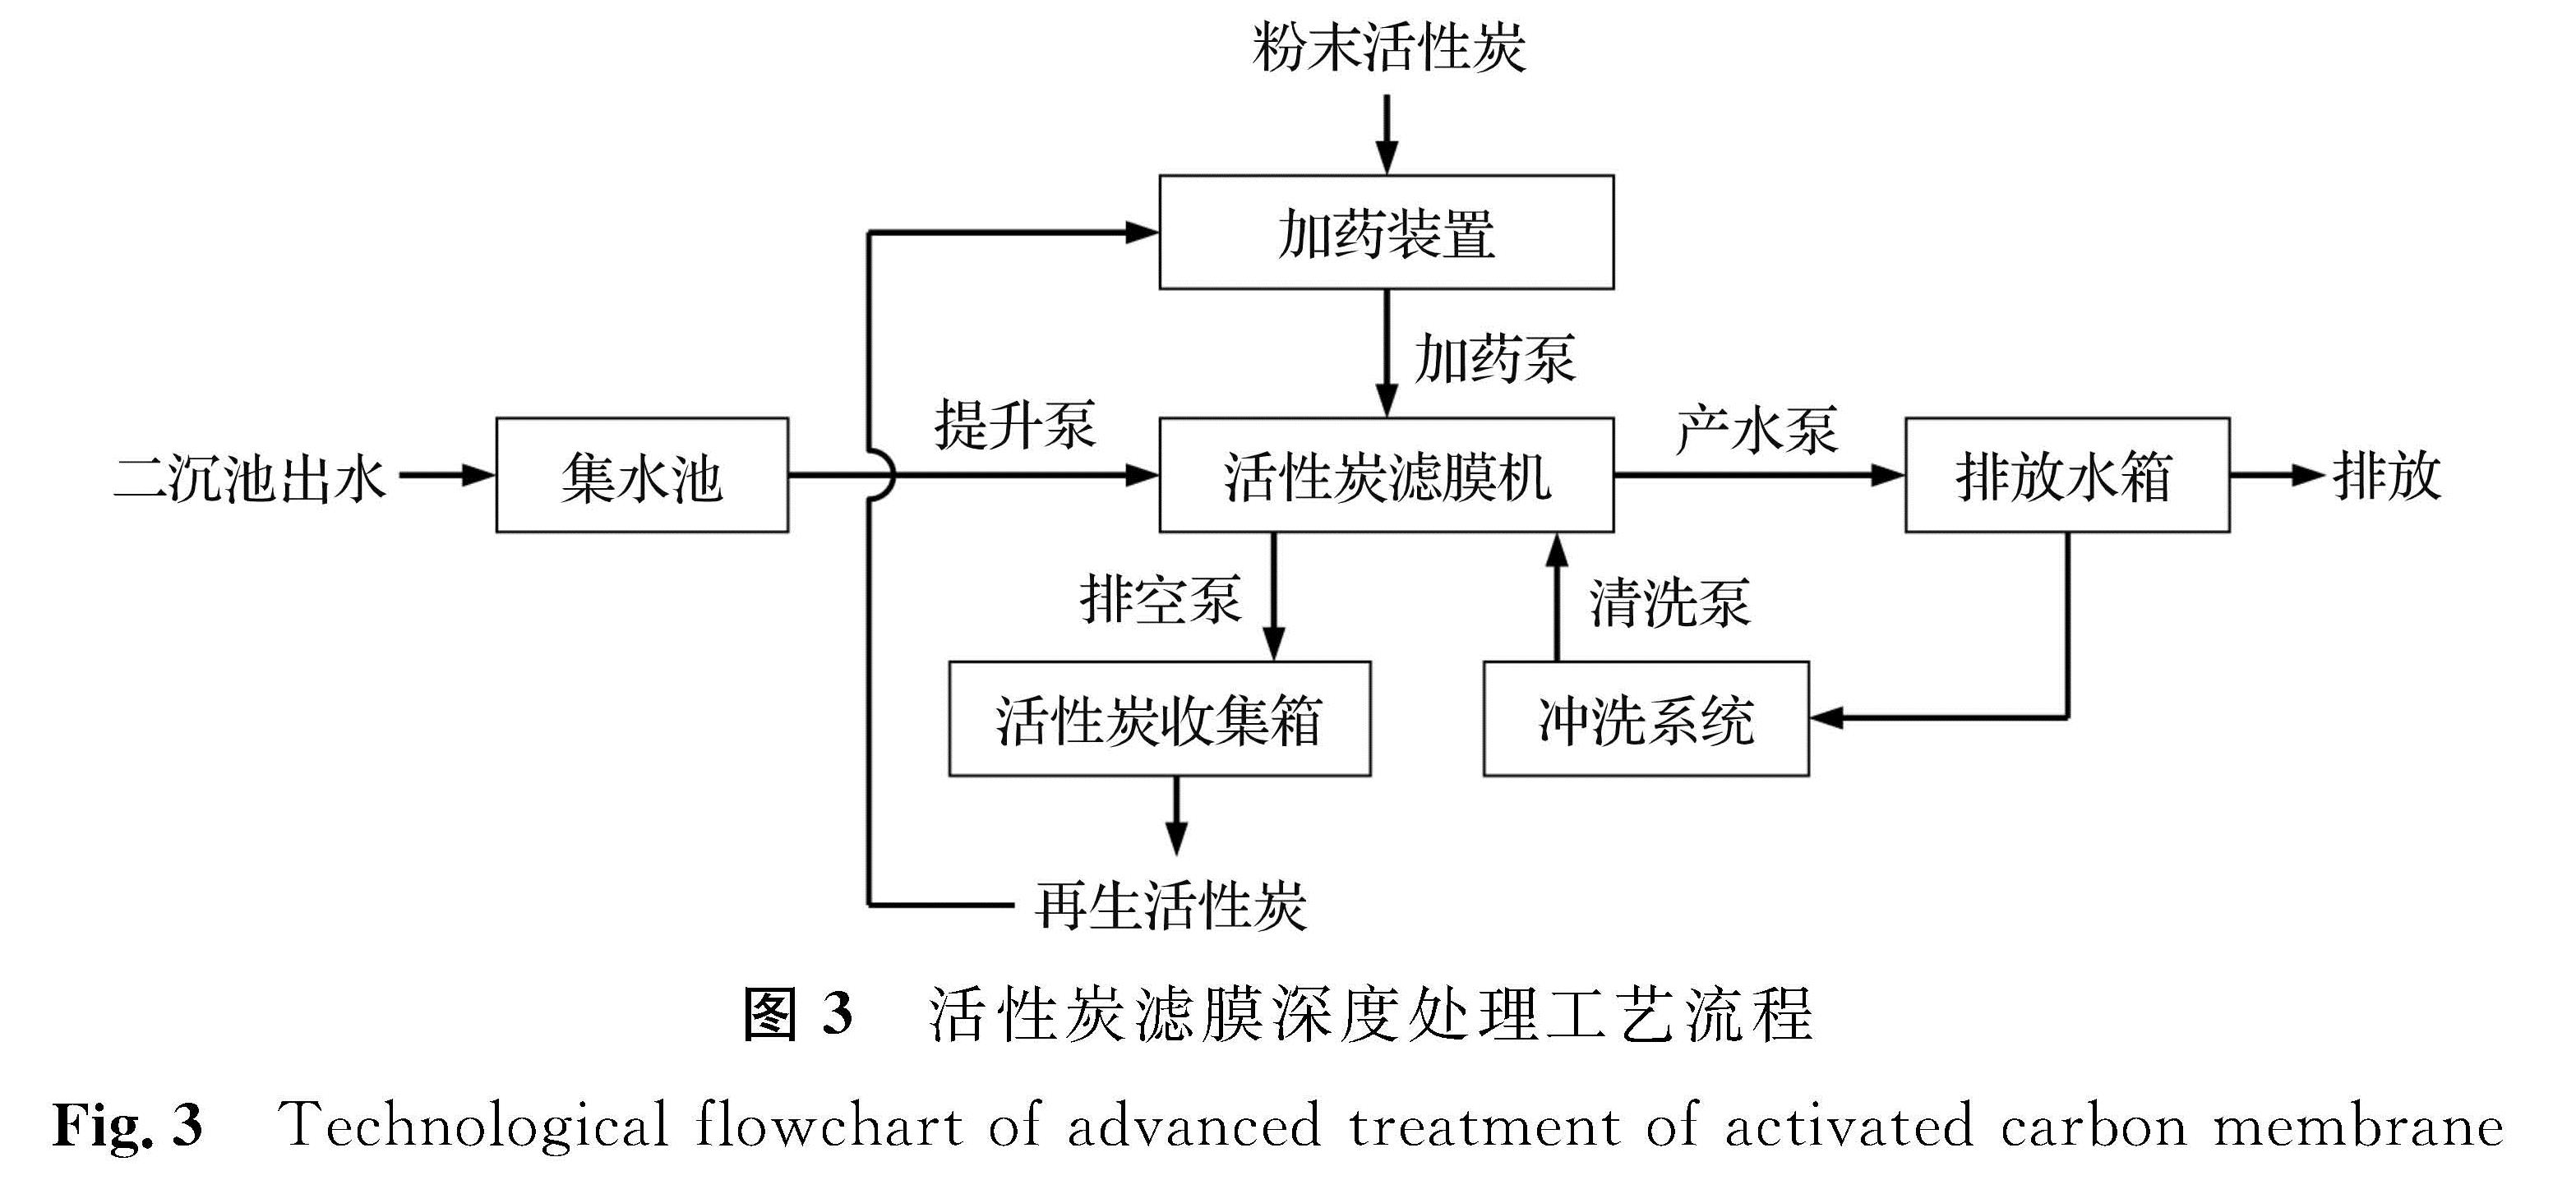 图3 活性炭滤膜深度处理工艺流程<br/>Fig.3 Technological flowchart of advanced treatment of activated carbon membrane